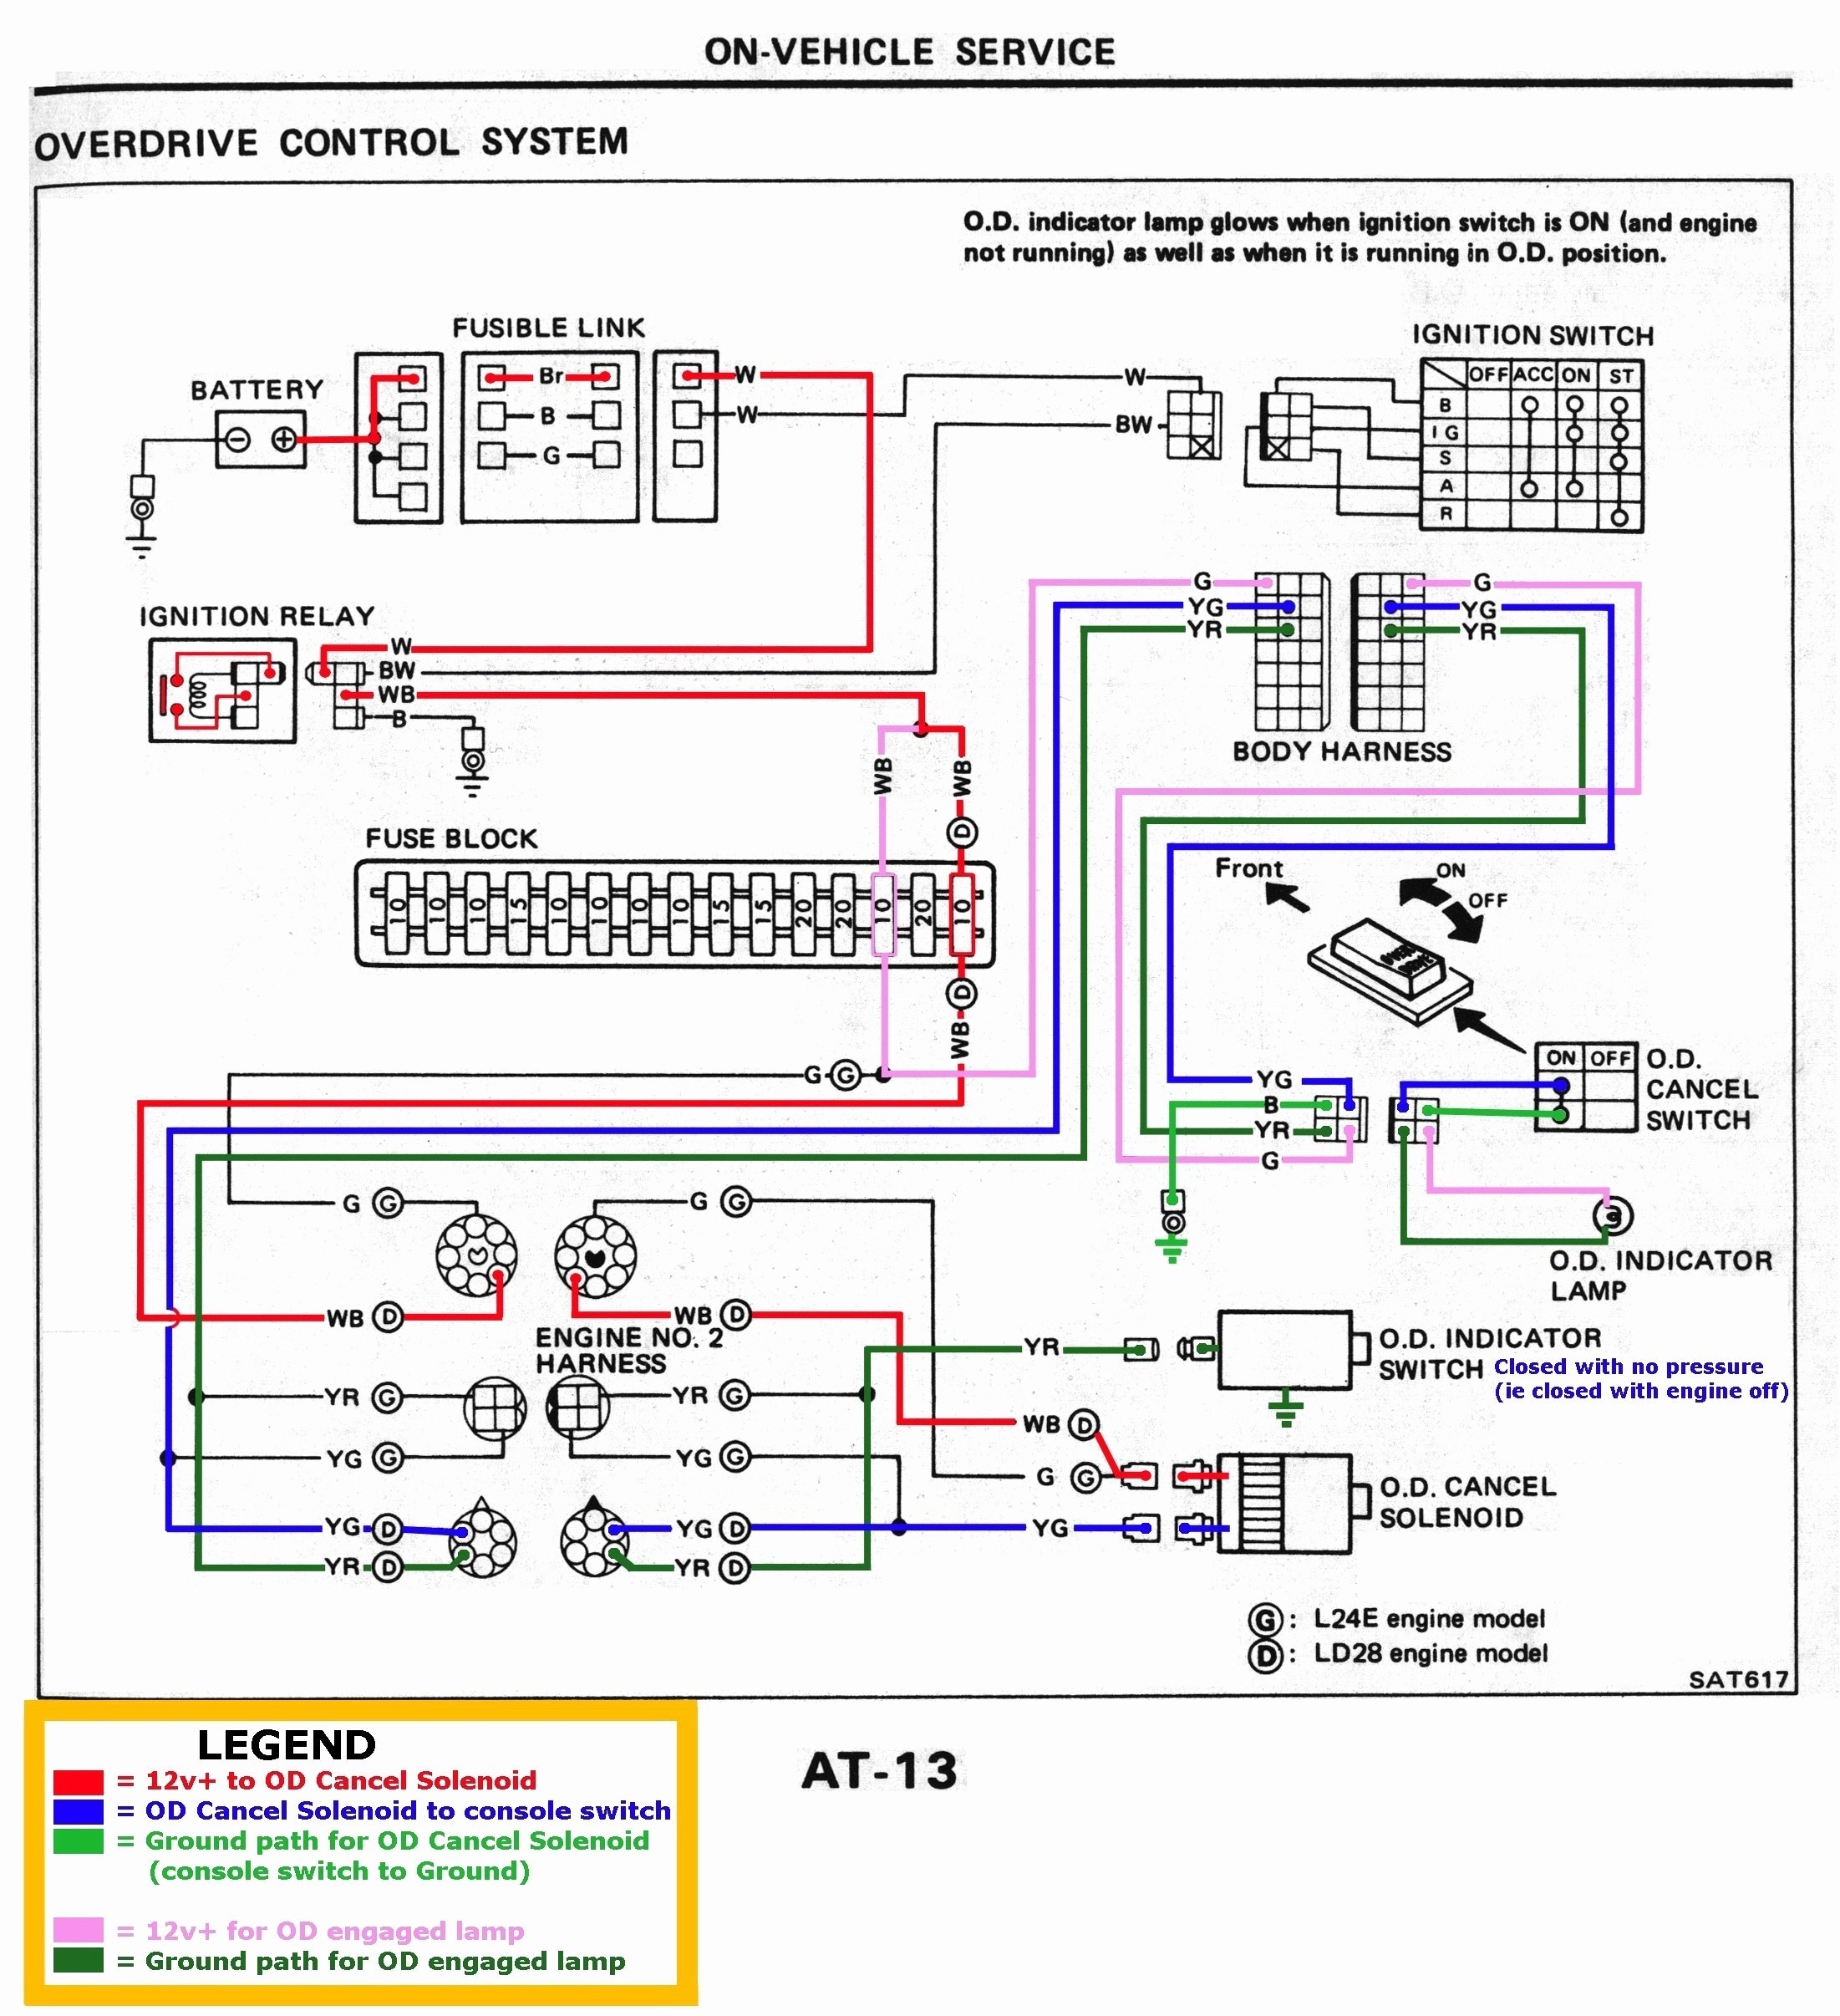 Engine Management System Diagram 2 Stroke Engine Diagram